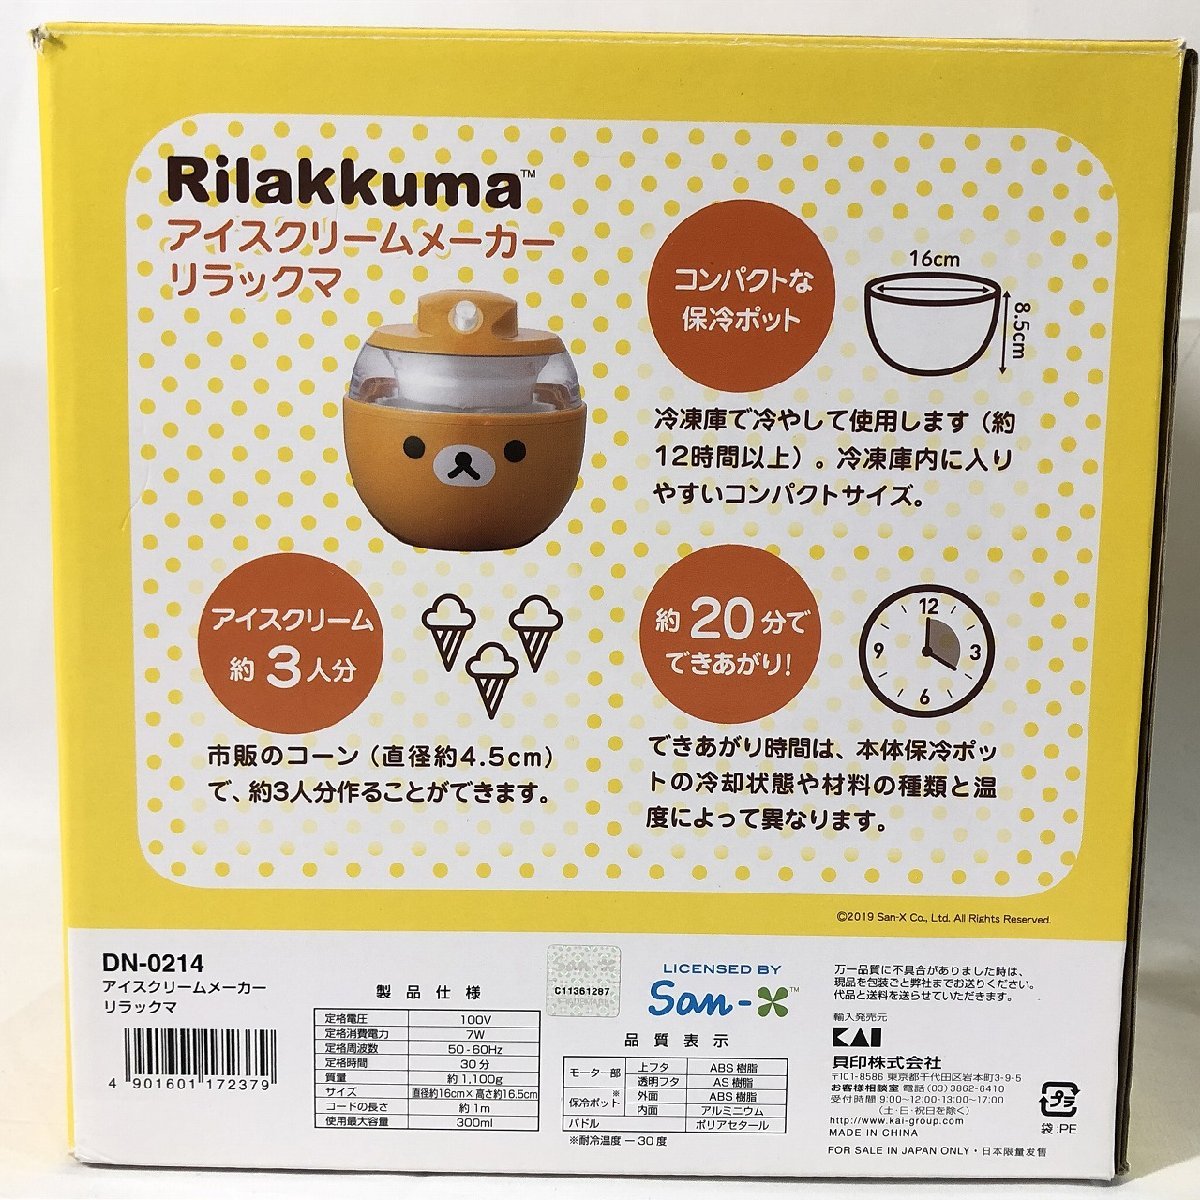 貝印】KAI /リラックマ アイスクリームメーカー DN-0214 10日保証付[茶]《美品》B9